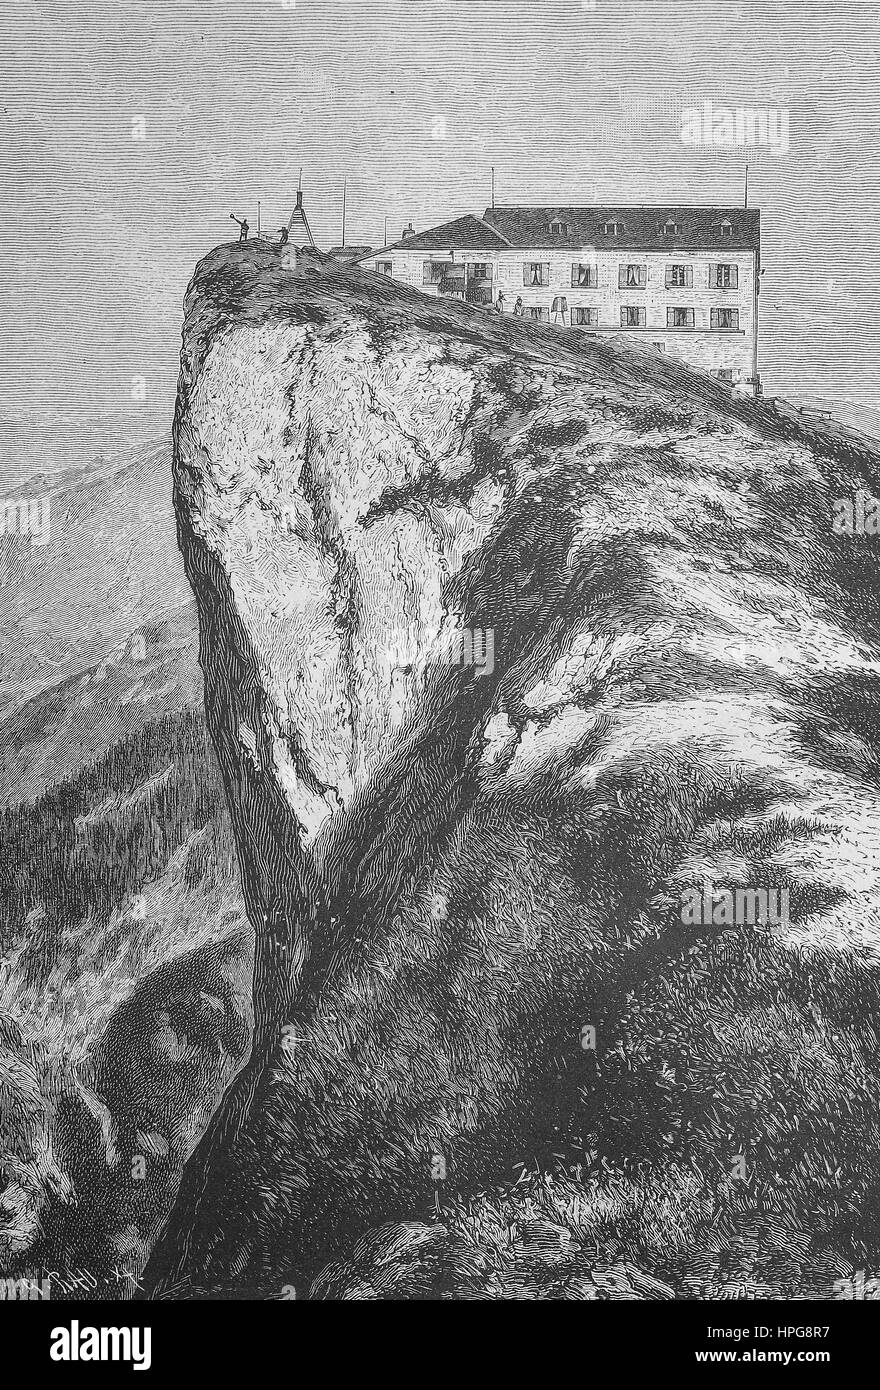 L'hôtel à la montagne Schafberg c'est un dans l'État autrichien de Salzbourg. Situé dans la région du Salzkammergut de montagnes des Alpes calcaires septentrionales, l'amélioration numérique reproduction d'une gravure sur bois à partir de l'année 1885 Banque D'Images